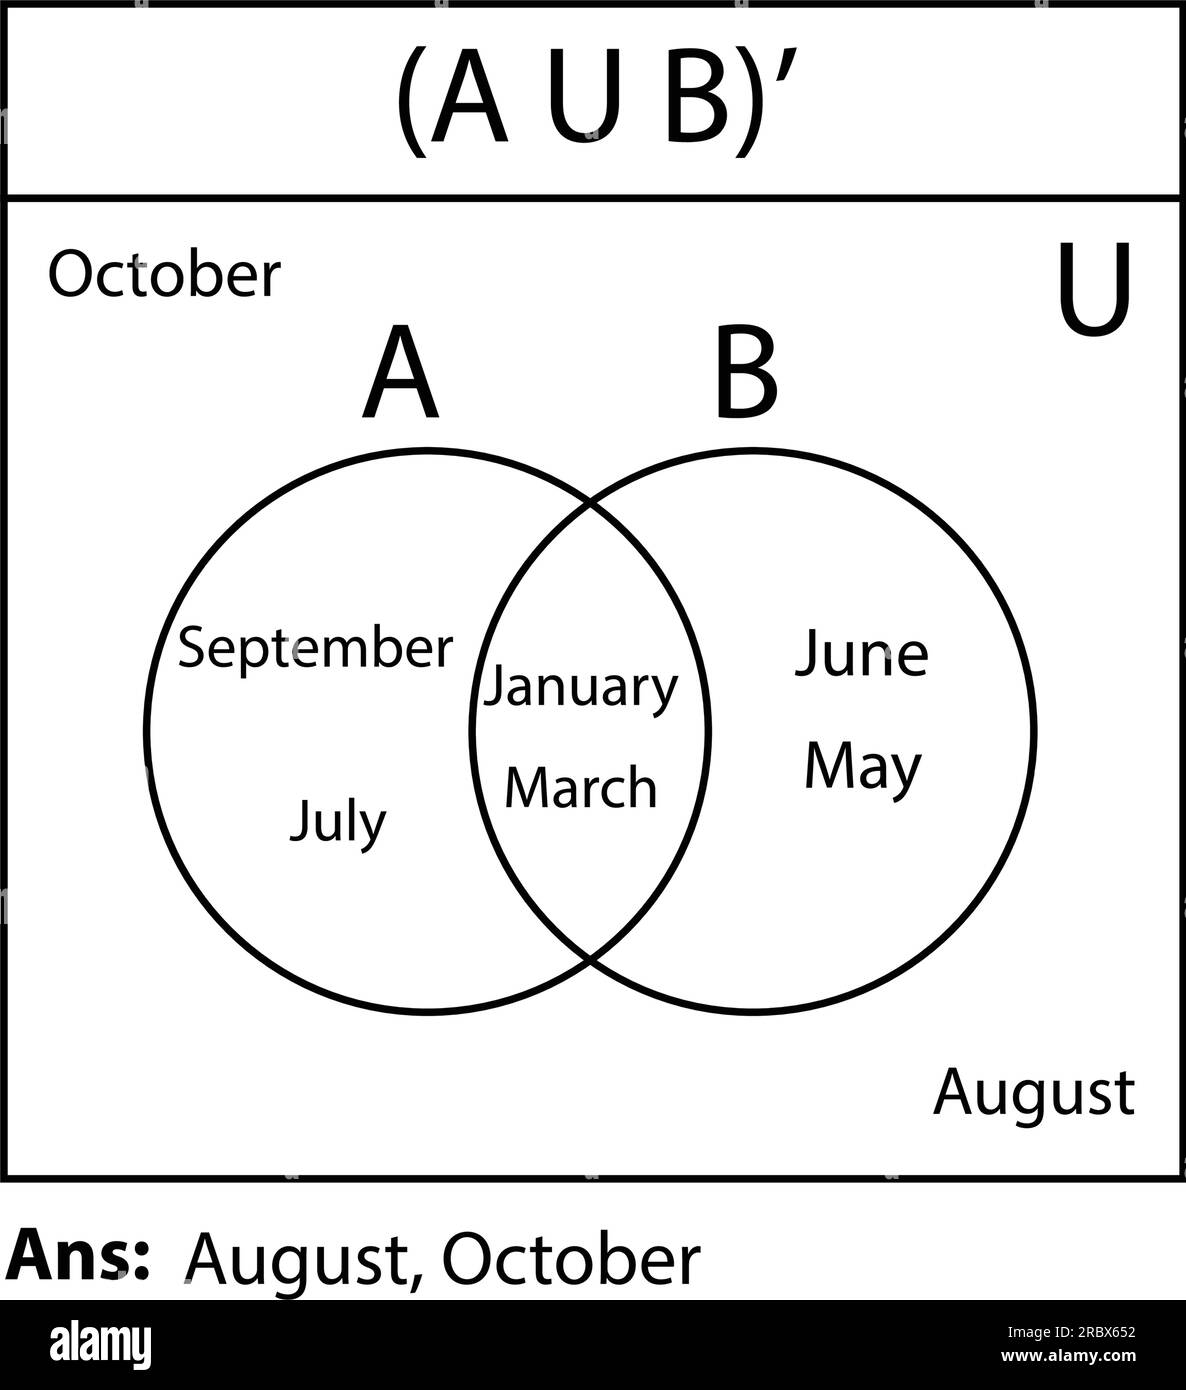 Diagramma Venn. Serie di diagrammi Venn di contorno con A, B e cerchi sovrapposti. grafici statistici, presentazioni e layout infografici. Illustrazione Vettoriale